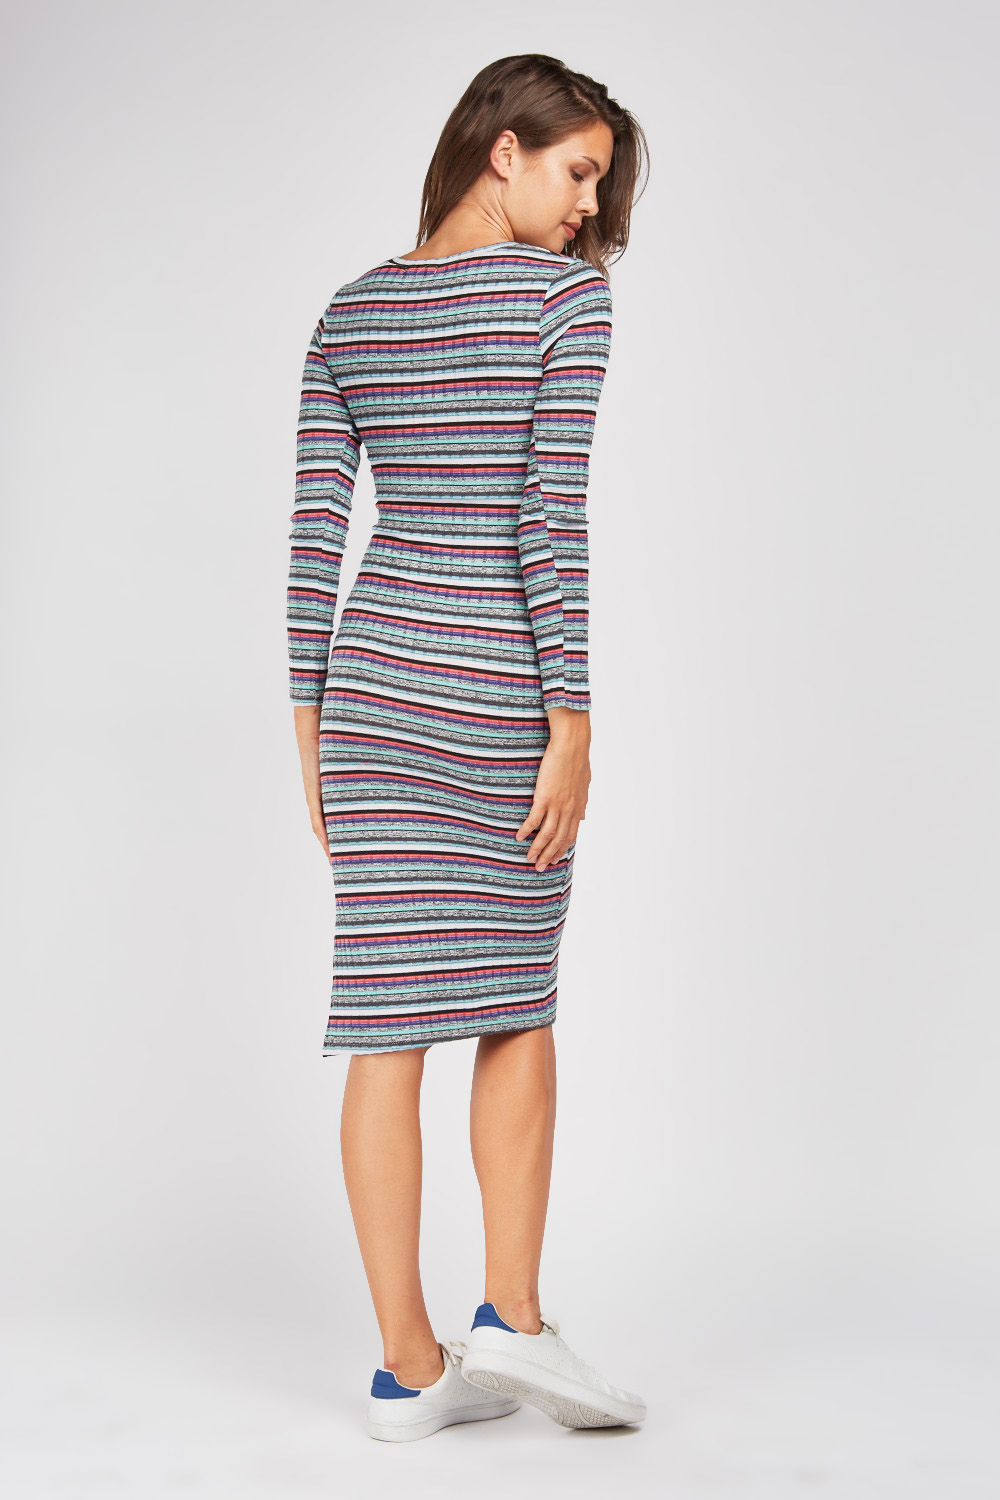 Midi Stripe Rib Knit Dress - Just $7